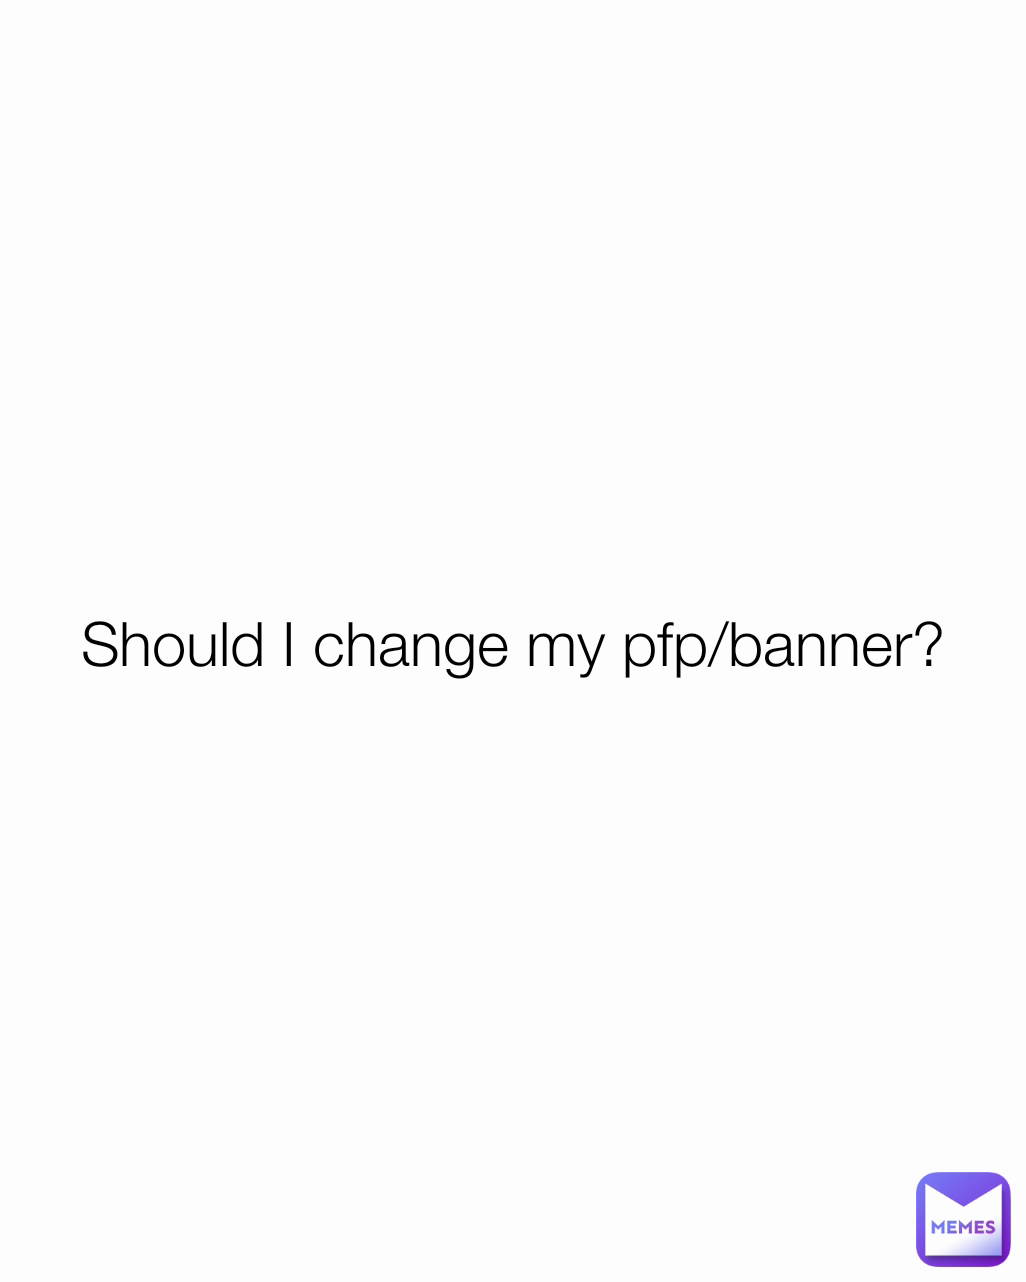 Should I change my pfp/banner?